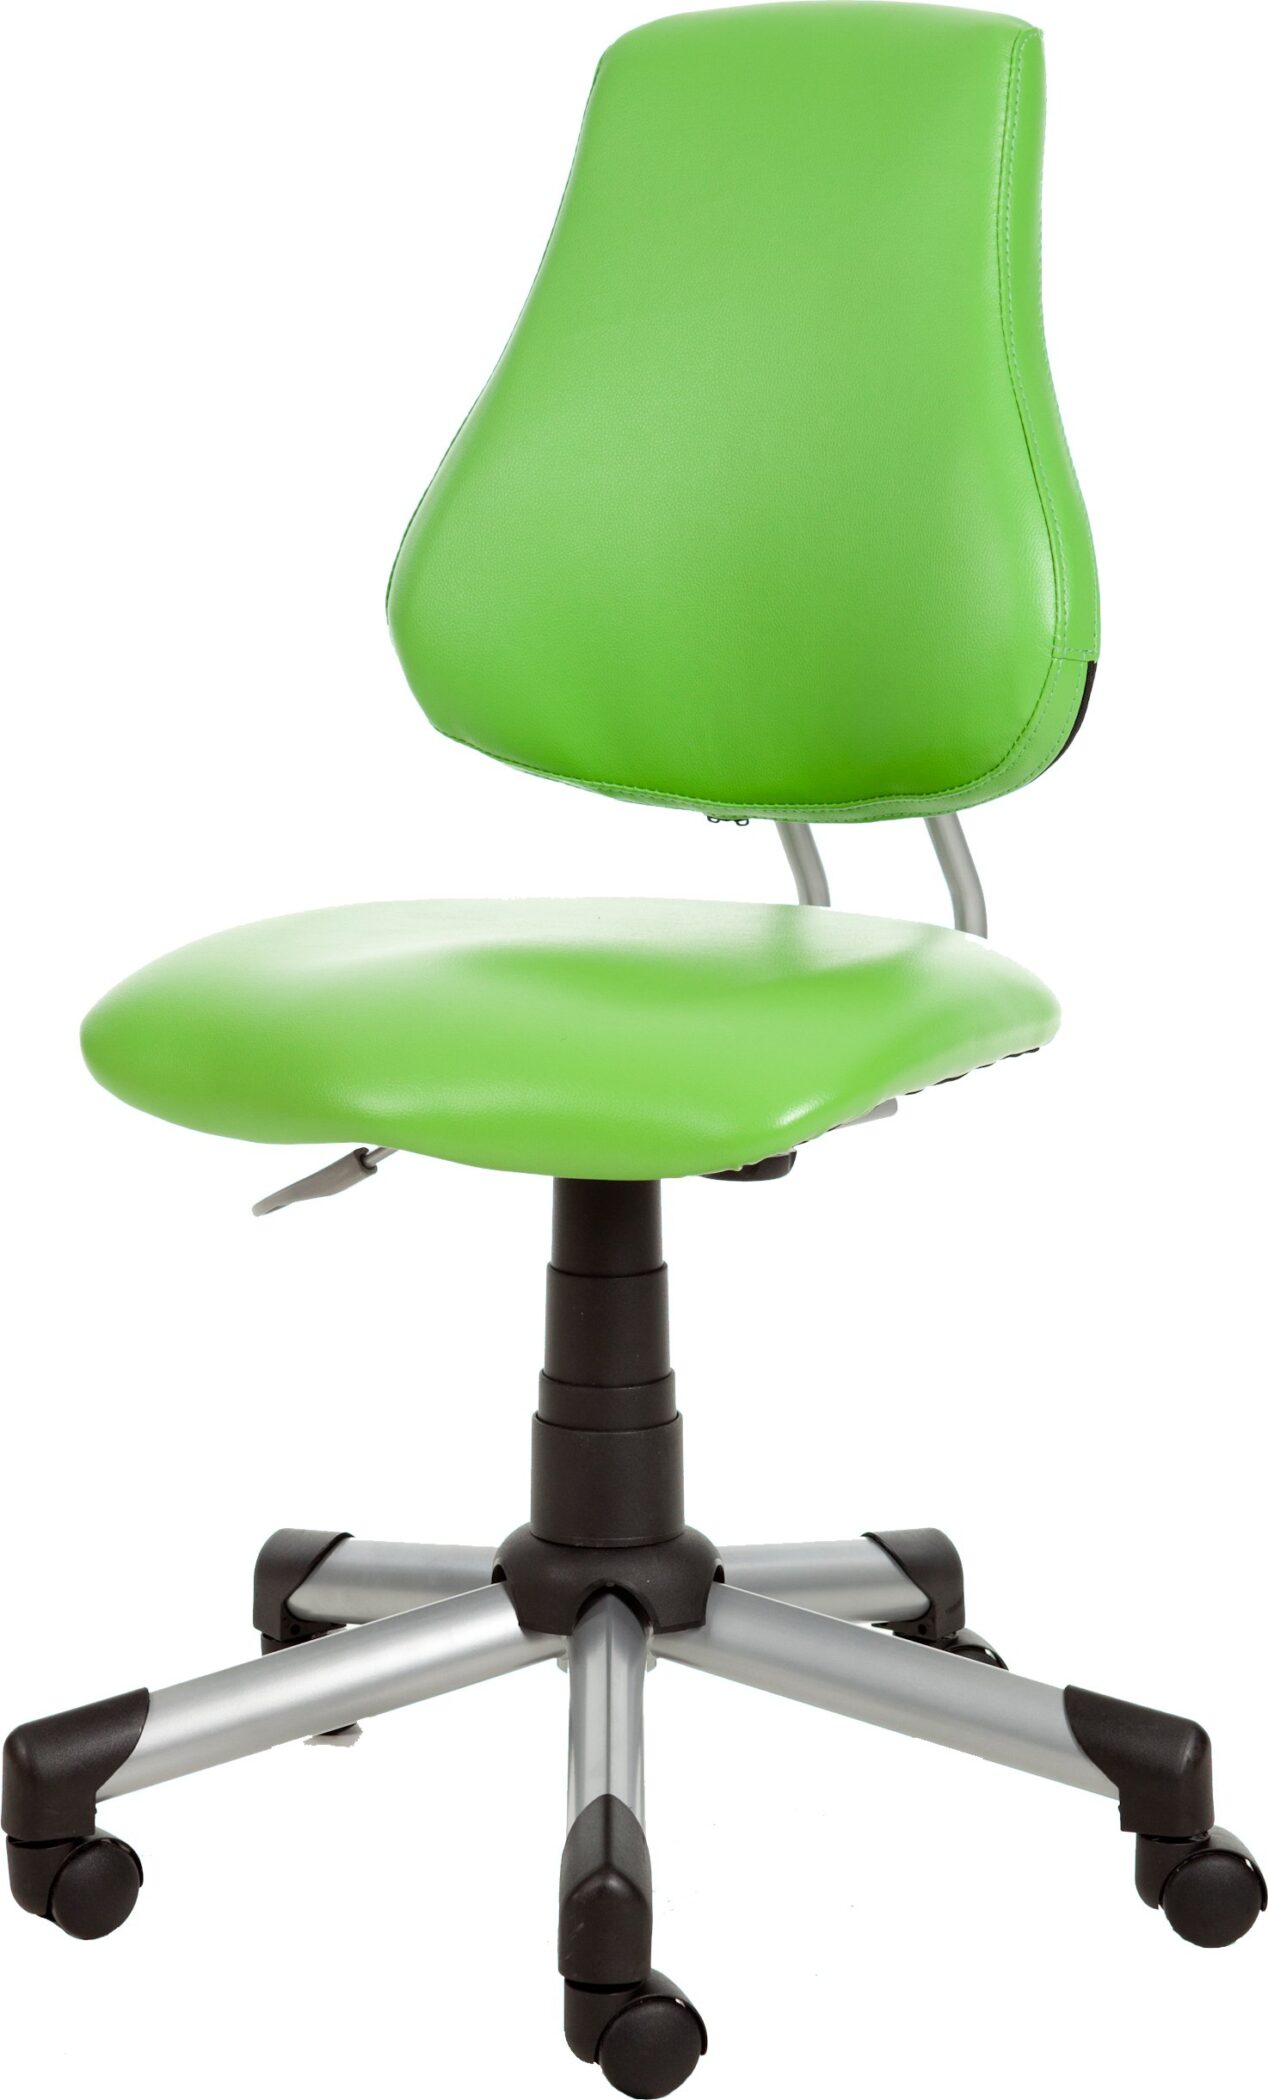 Leidsterstoel - bureaustoel comfort lime groen